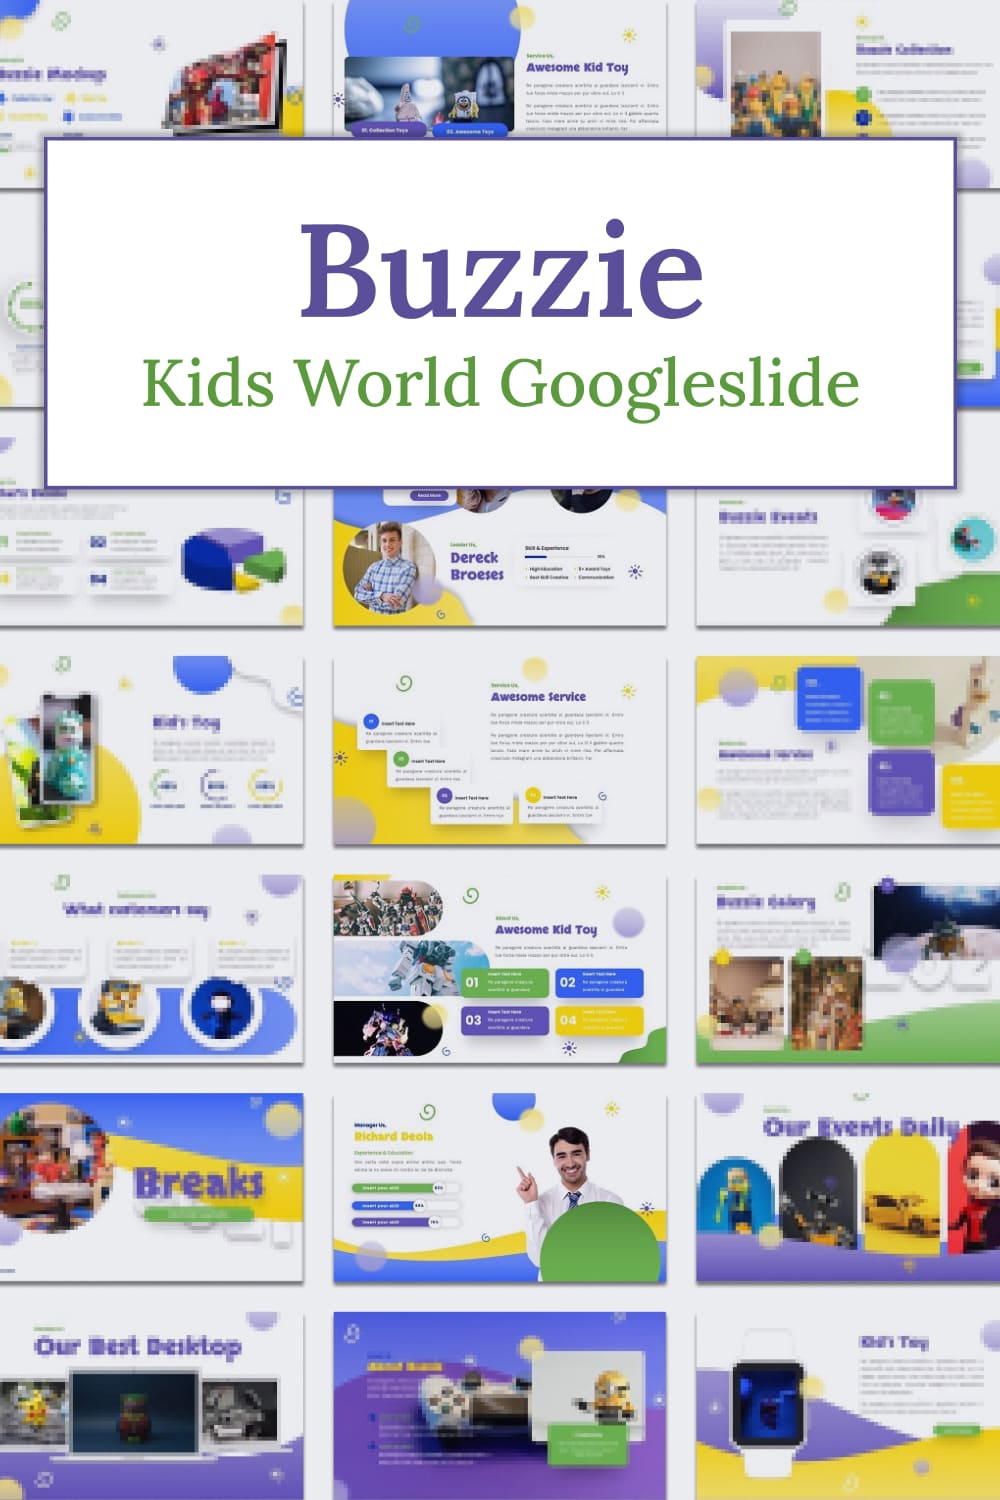 buzzie kids world googleslide 02 906